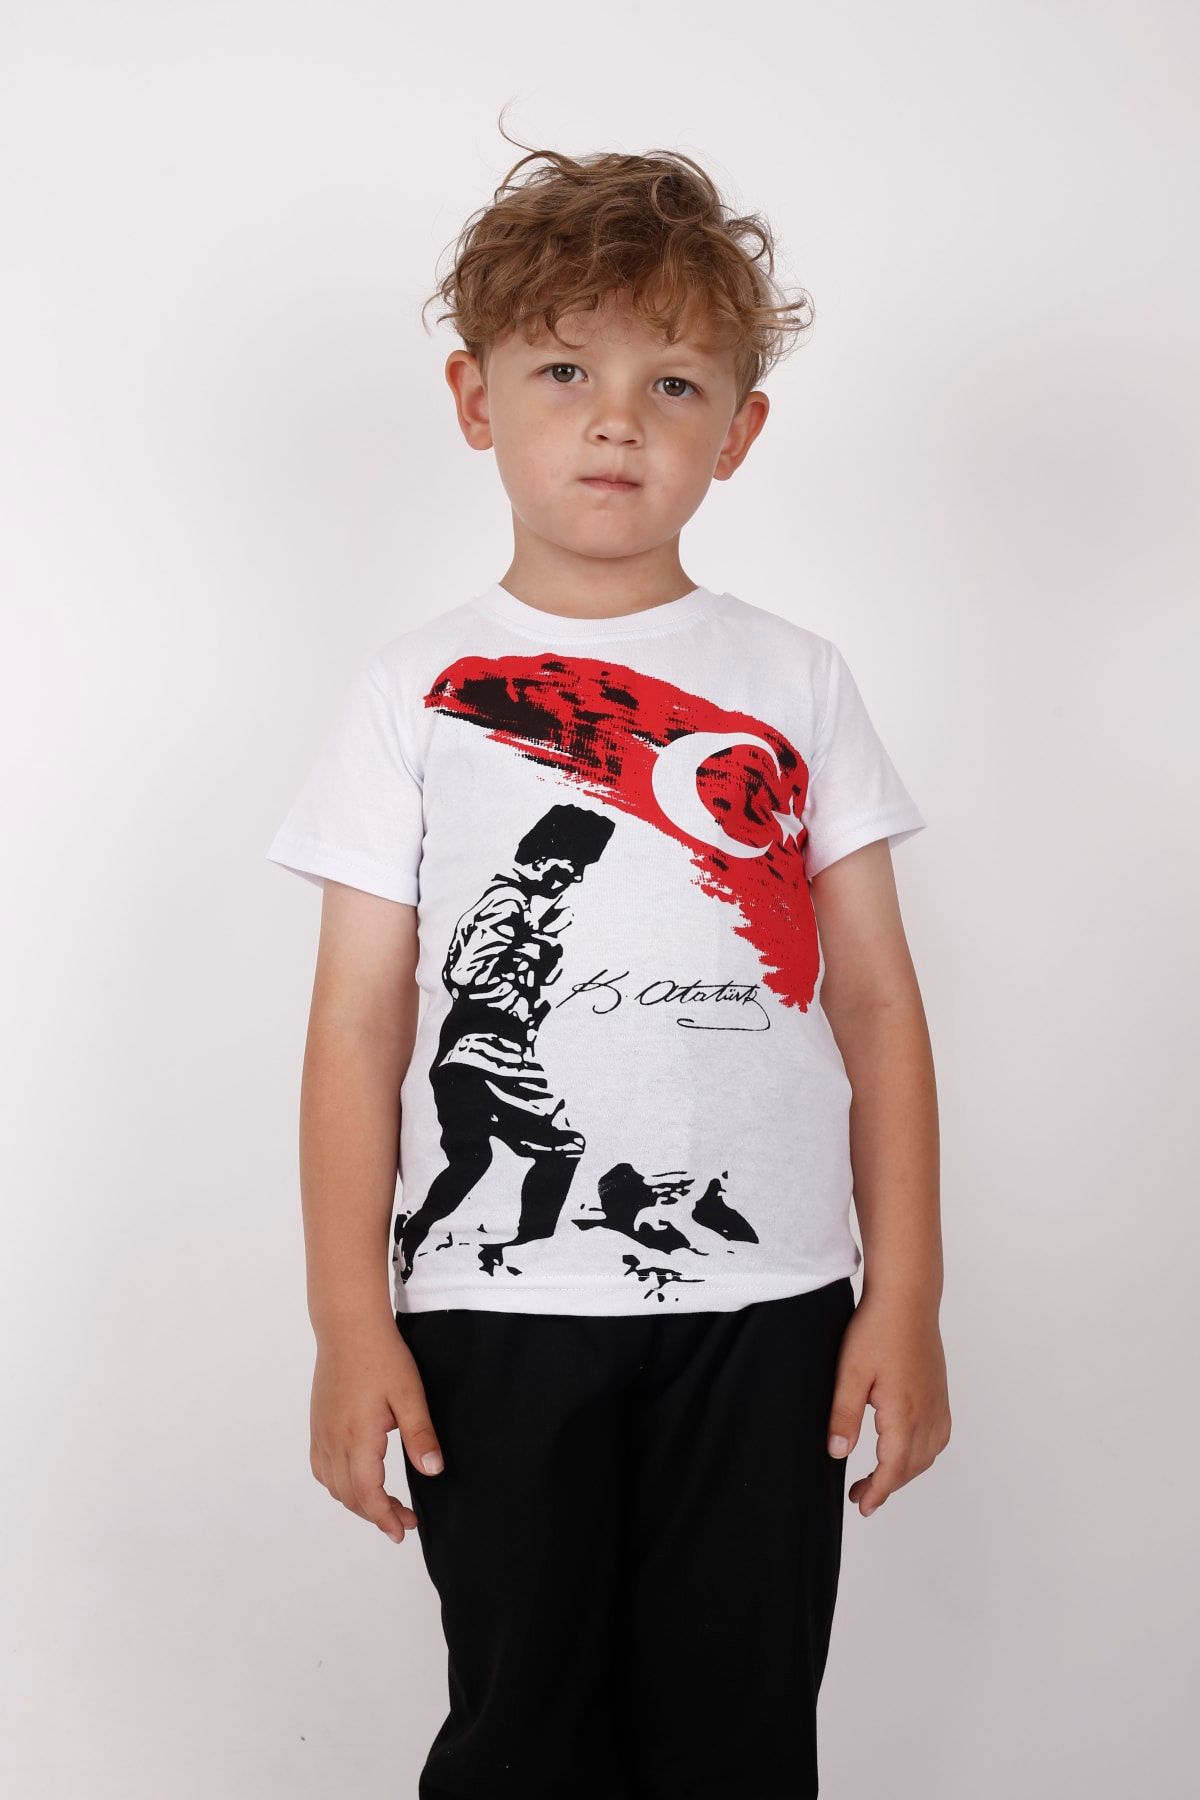 FATELLA Çocuk Atatürk Kısa Kollu Penye Süper Tişört T-shirt 23 Nisan 29 Ekim Atatürk Kısa Kol